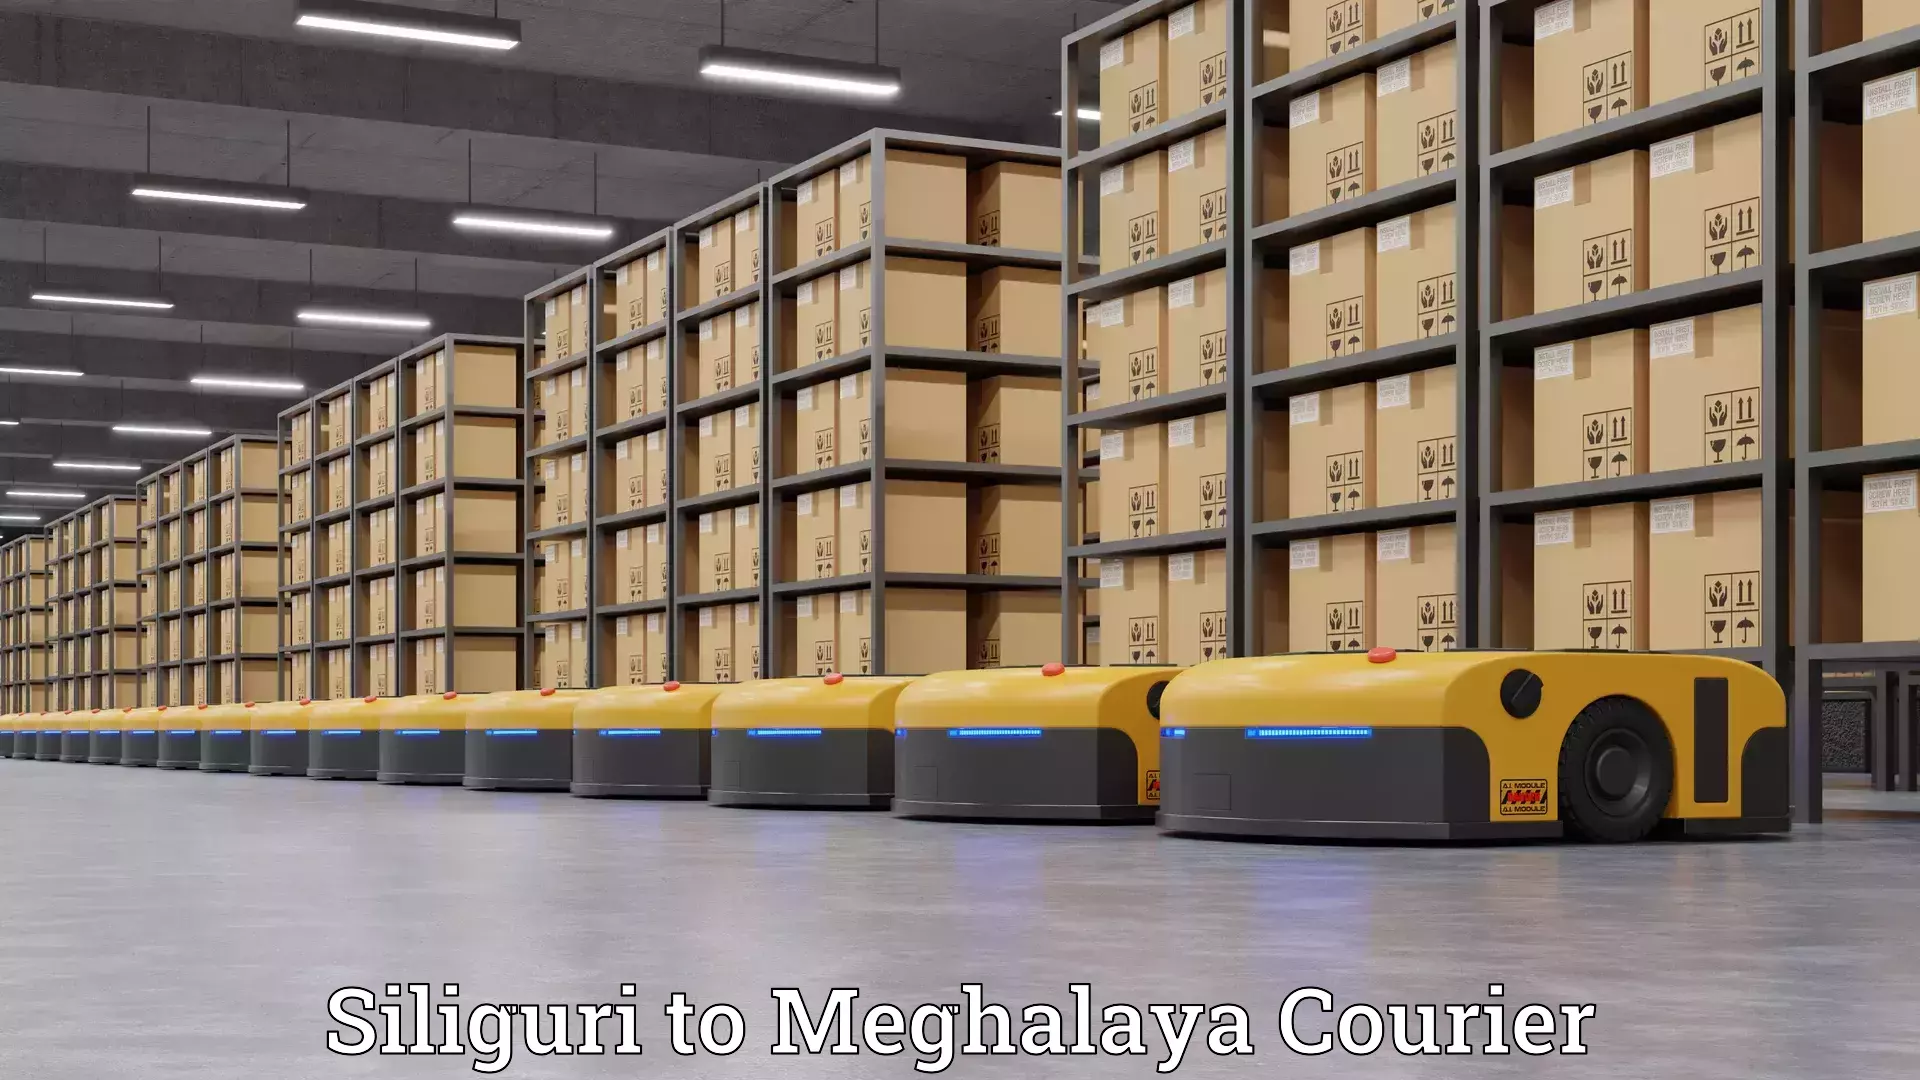 Professional furniture movers Siliguri to Meghalaya